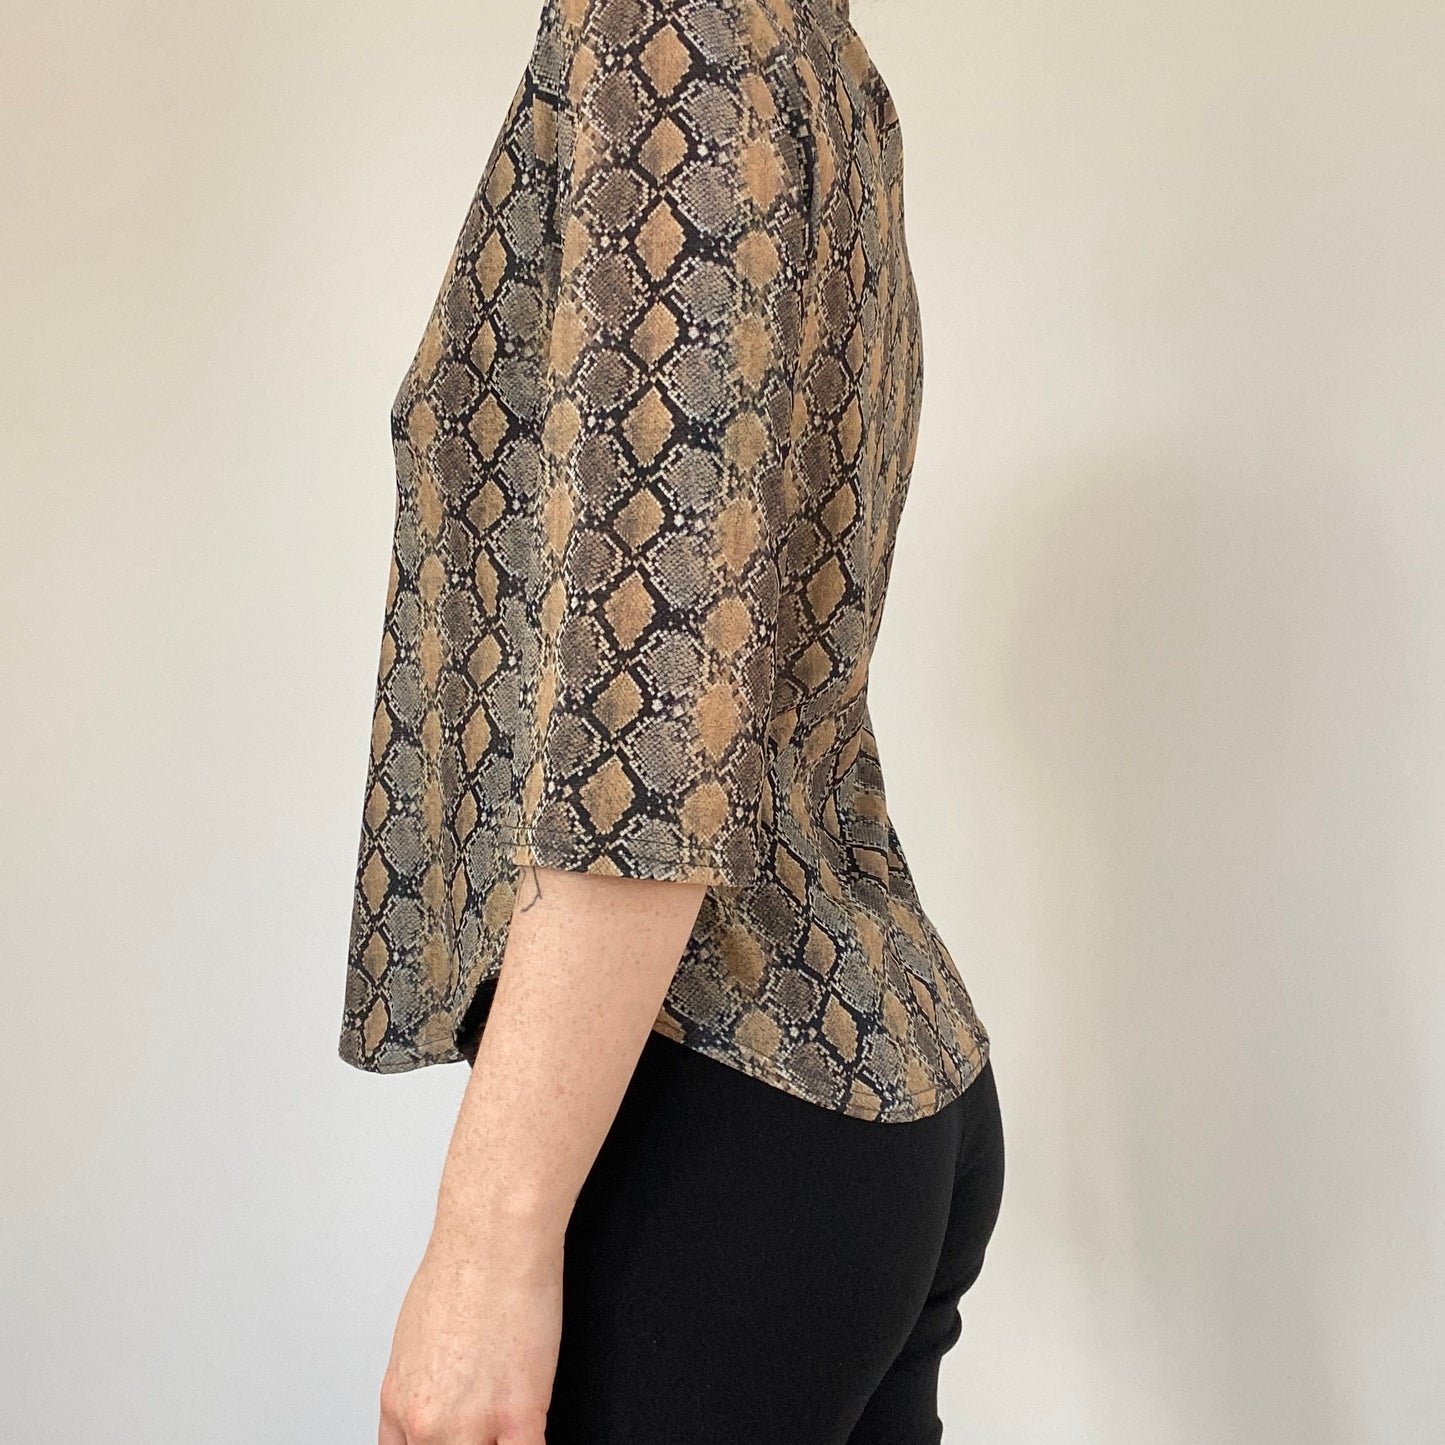 Y2K mesh snake print blouse - size 14